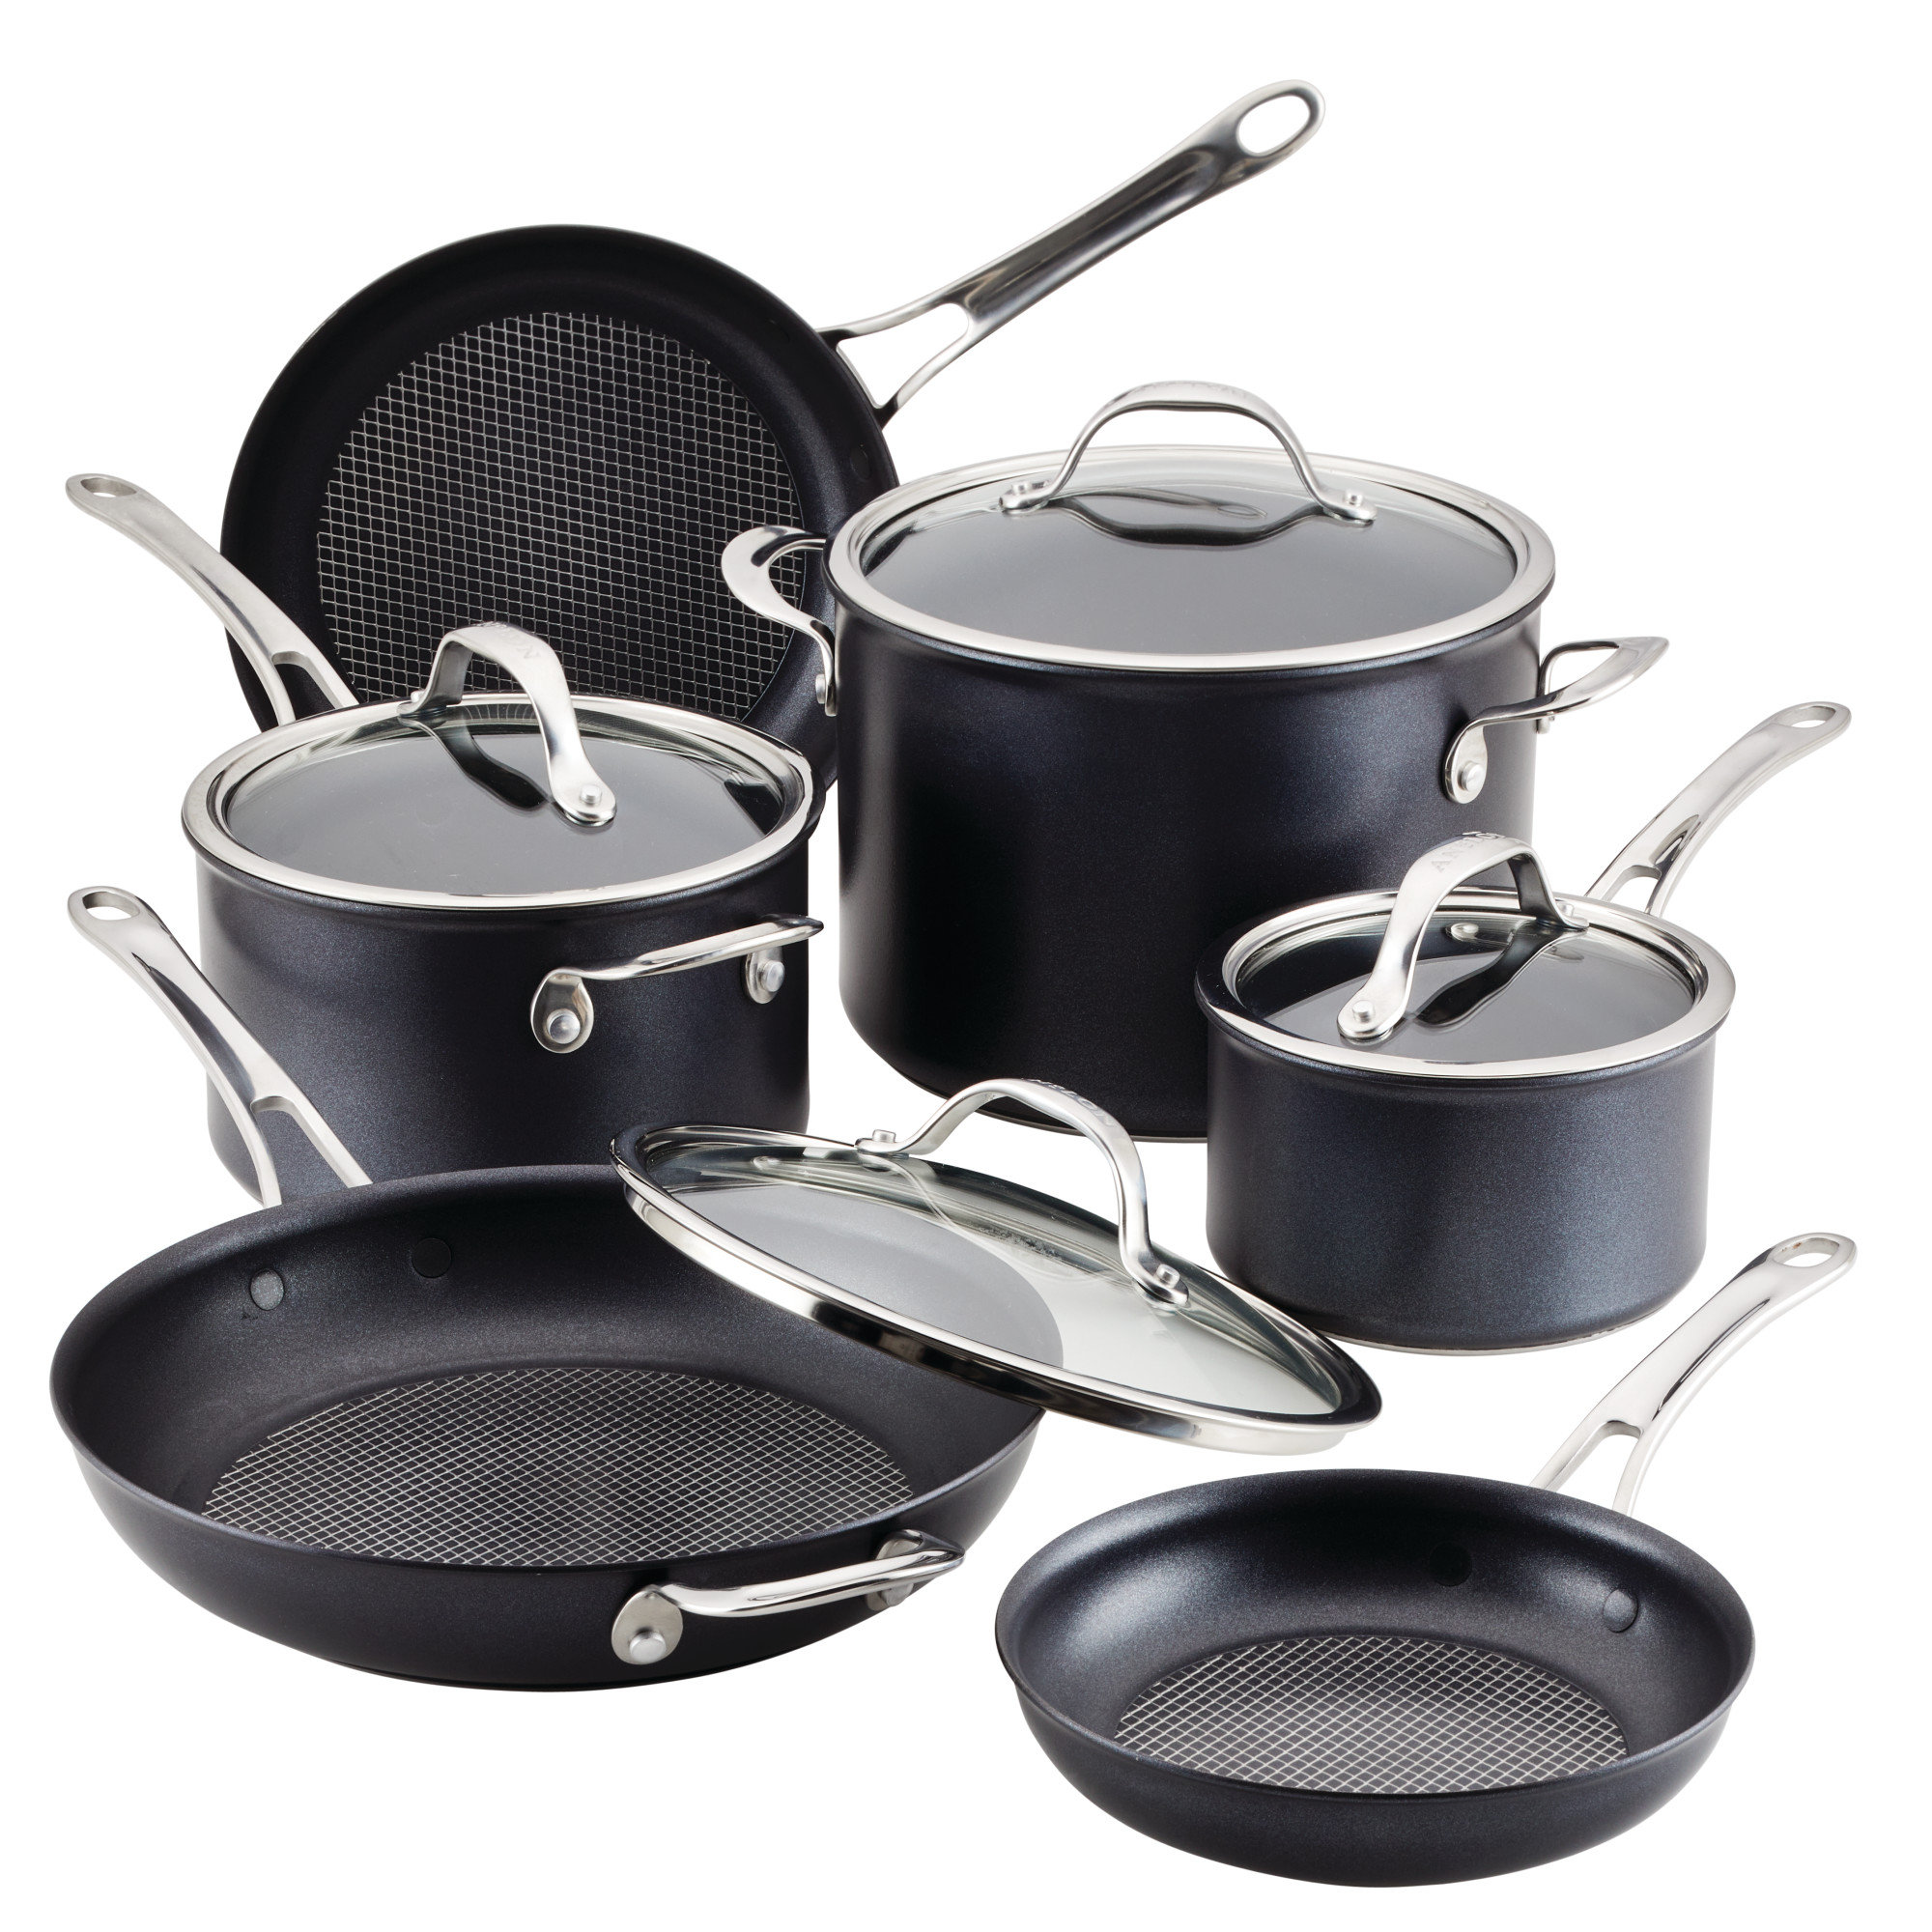 https://assets.wfcdn.com/im/12180811/compr-r85/1982/198217102/anolon-x-hybrid-nonstick-cookware-induction-pots-and-pans-set-10-piece.jpg